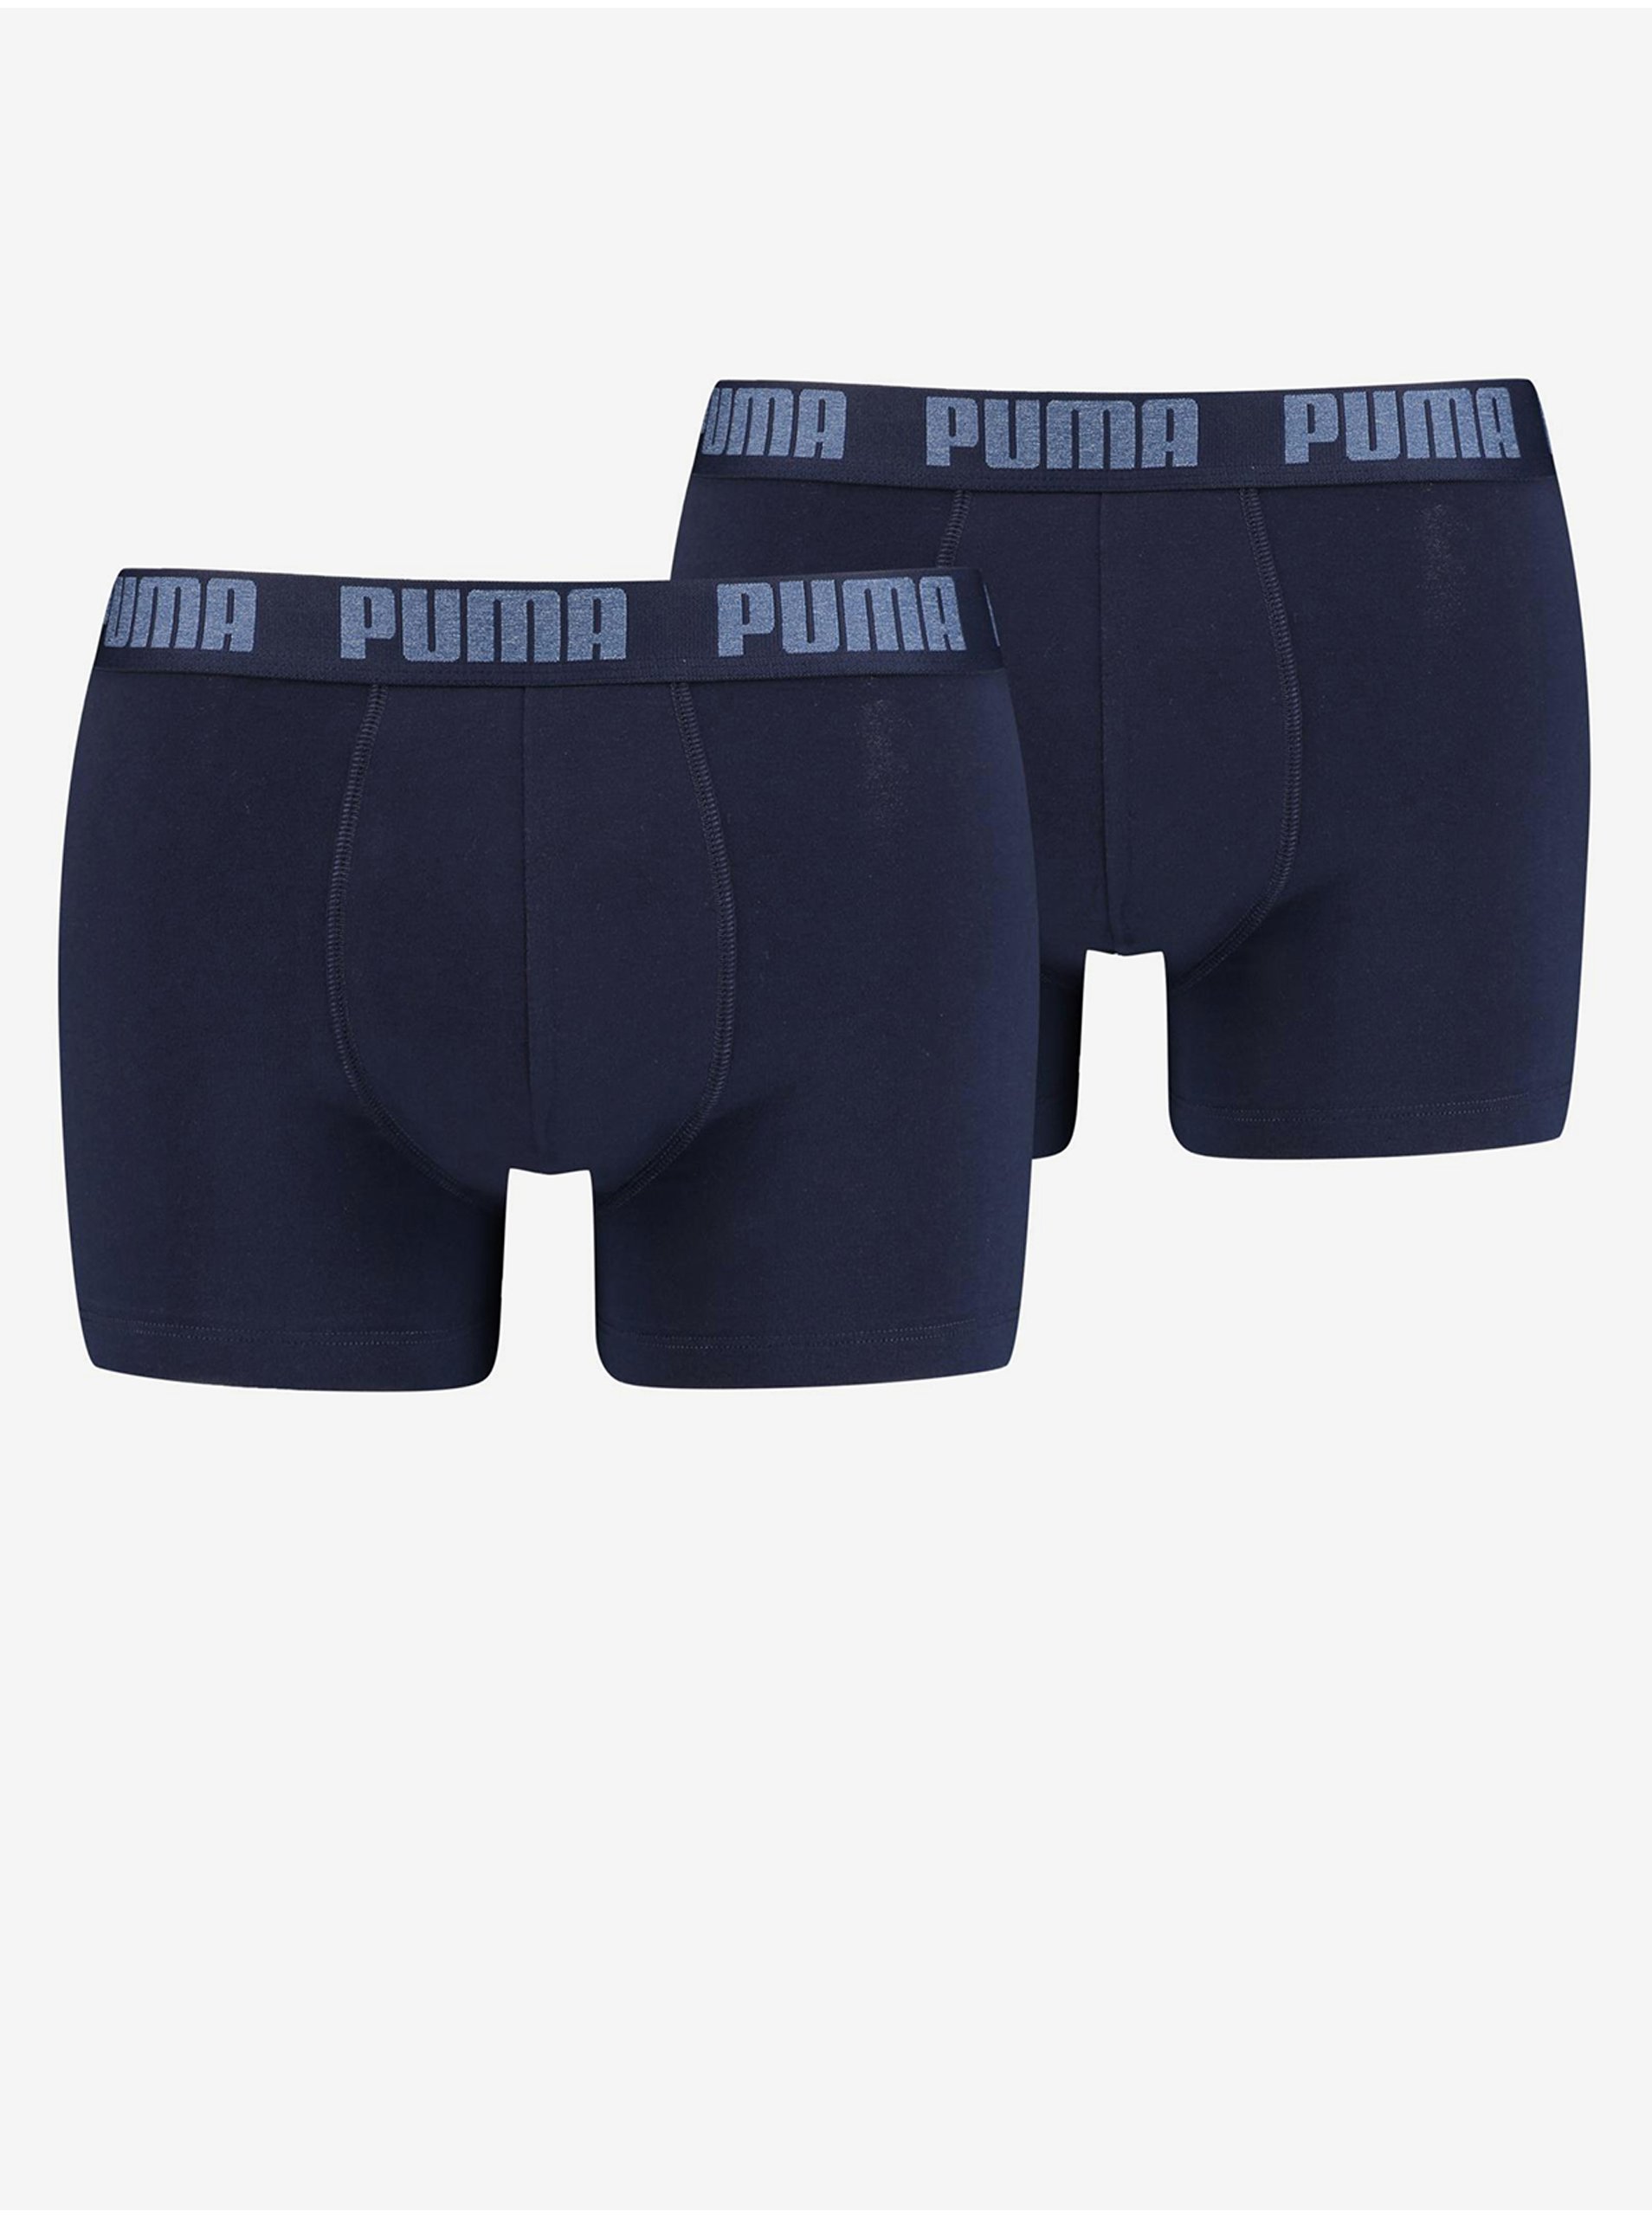 E-shop Sada dvou pánských boxerek v tmavě modré barvě Puma